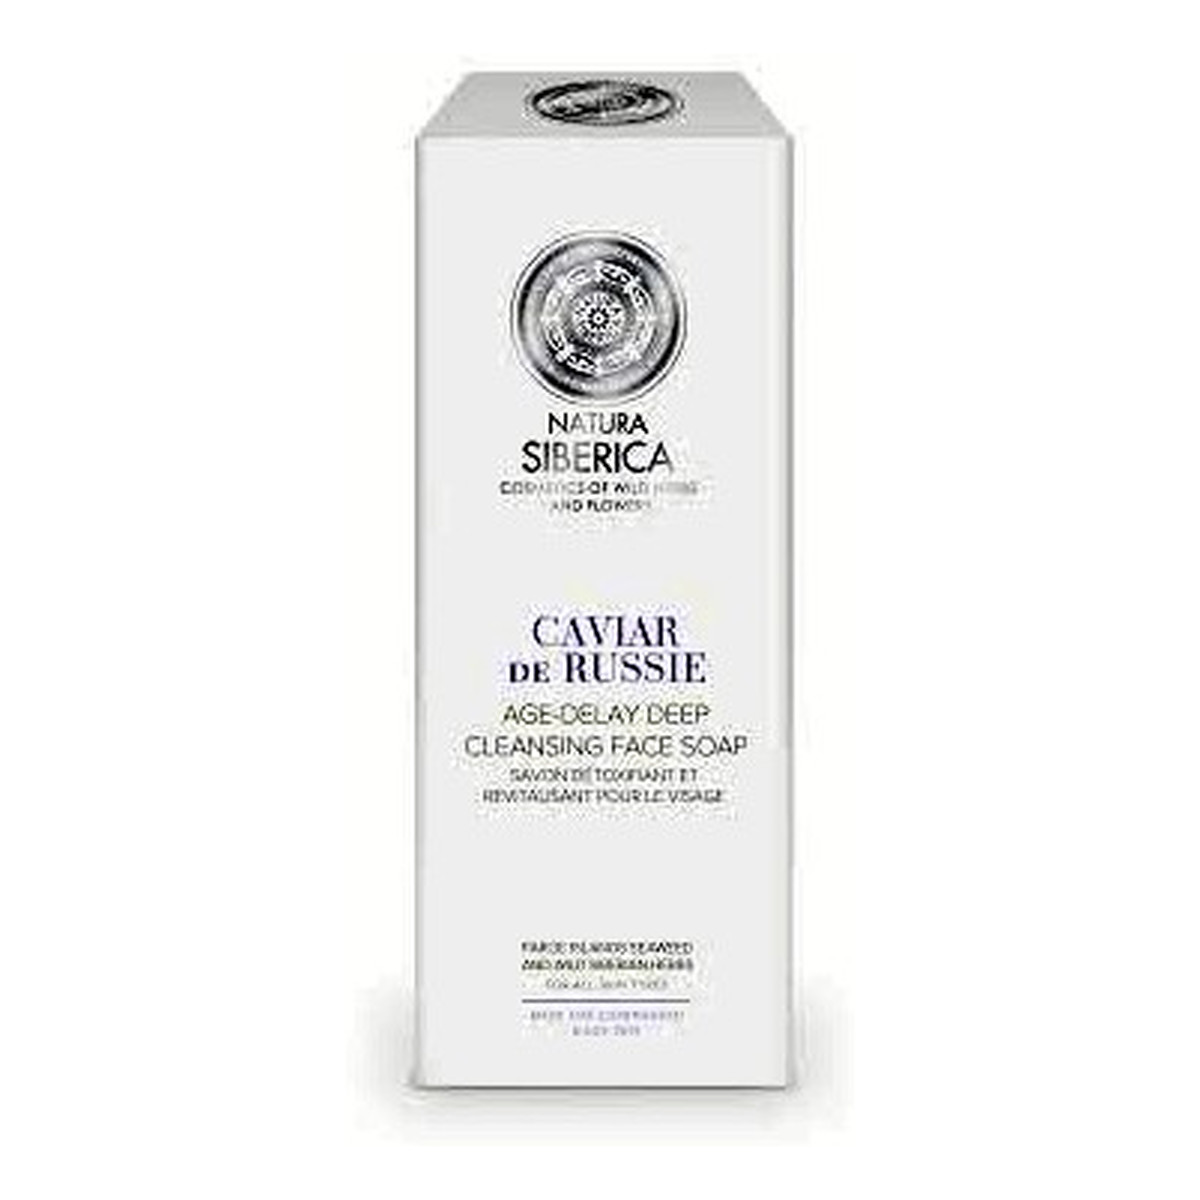 Natura Siberica Caviar De Russie Age-Delay Deep Cleansing Face Soap odmładzające mydło oczyszczające do mycia twarzy 175ml